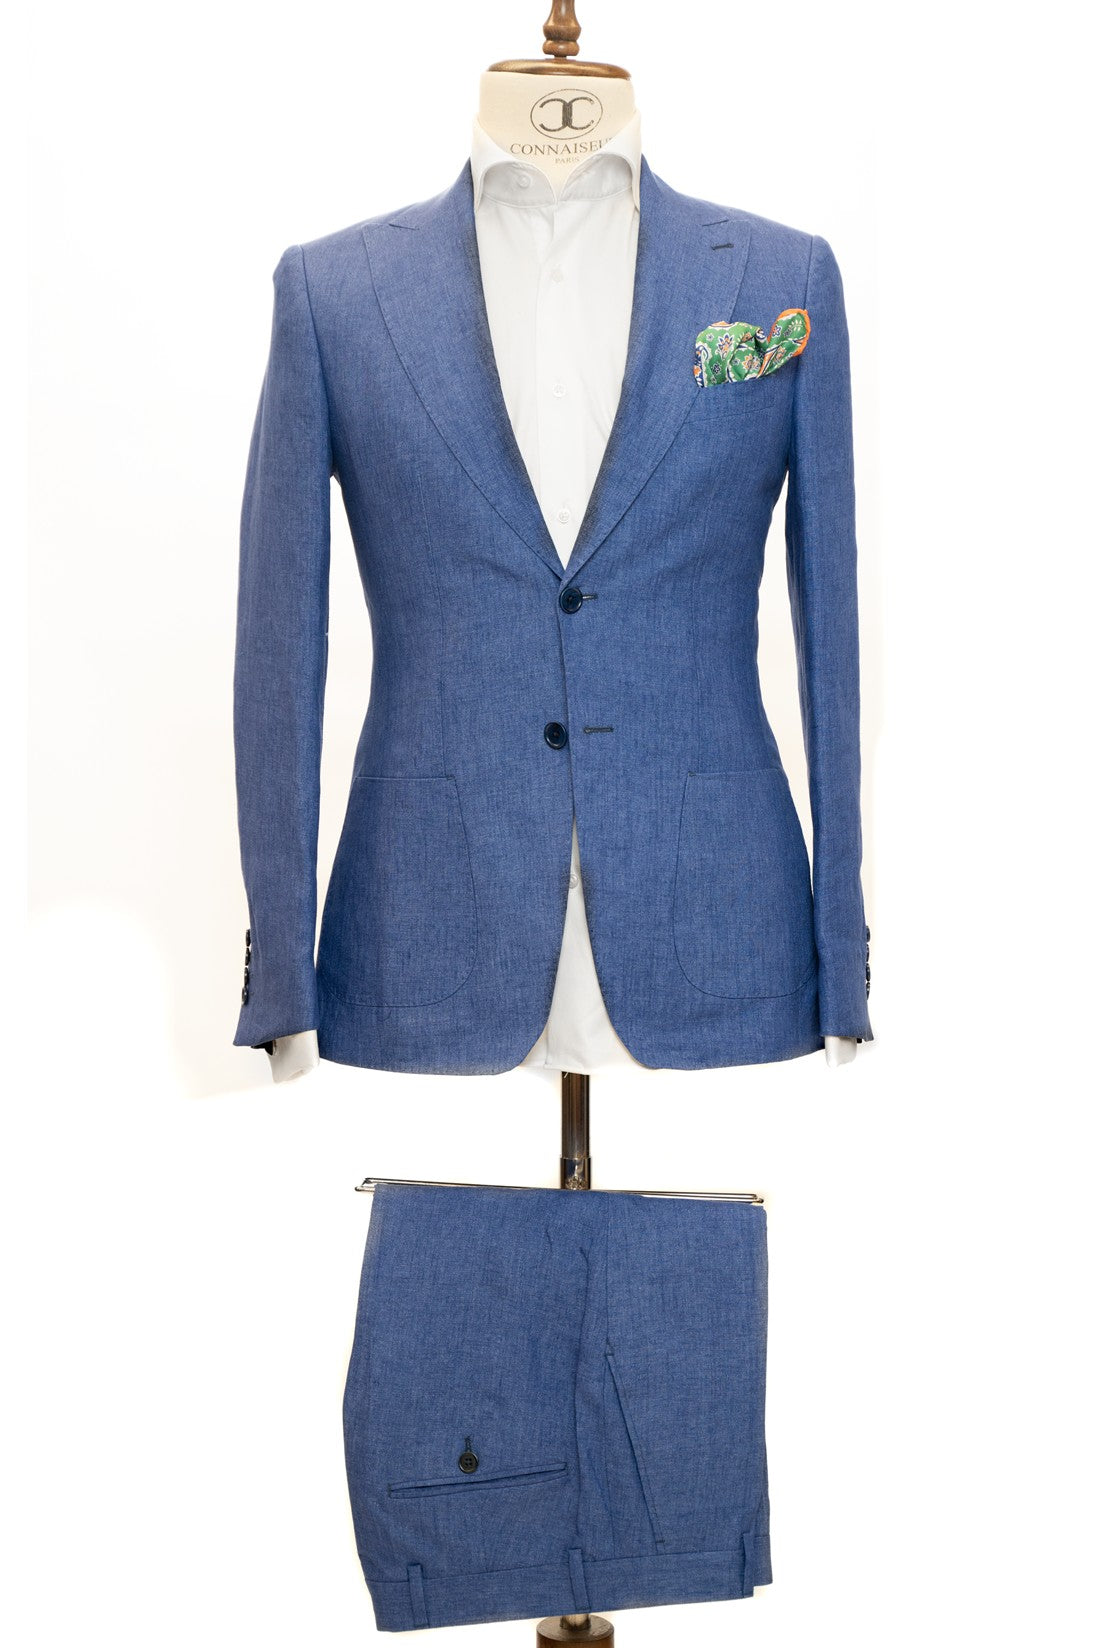 Connaisseur Paris - Light Blue 2 Piece Slim Fit Linen Suit with Patch Pockets